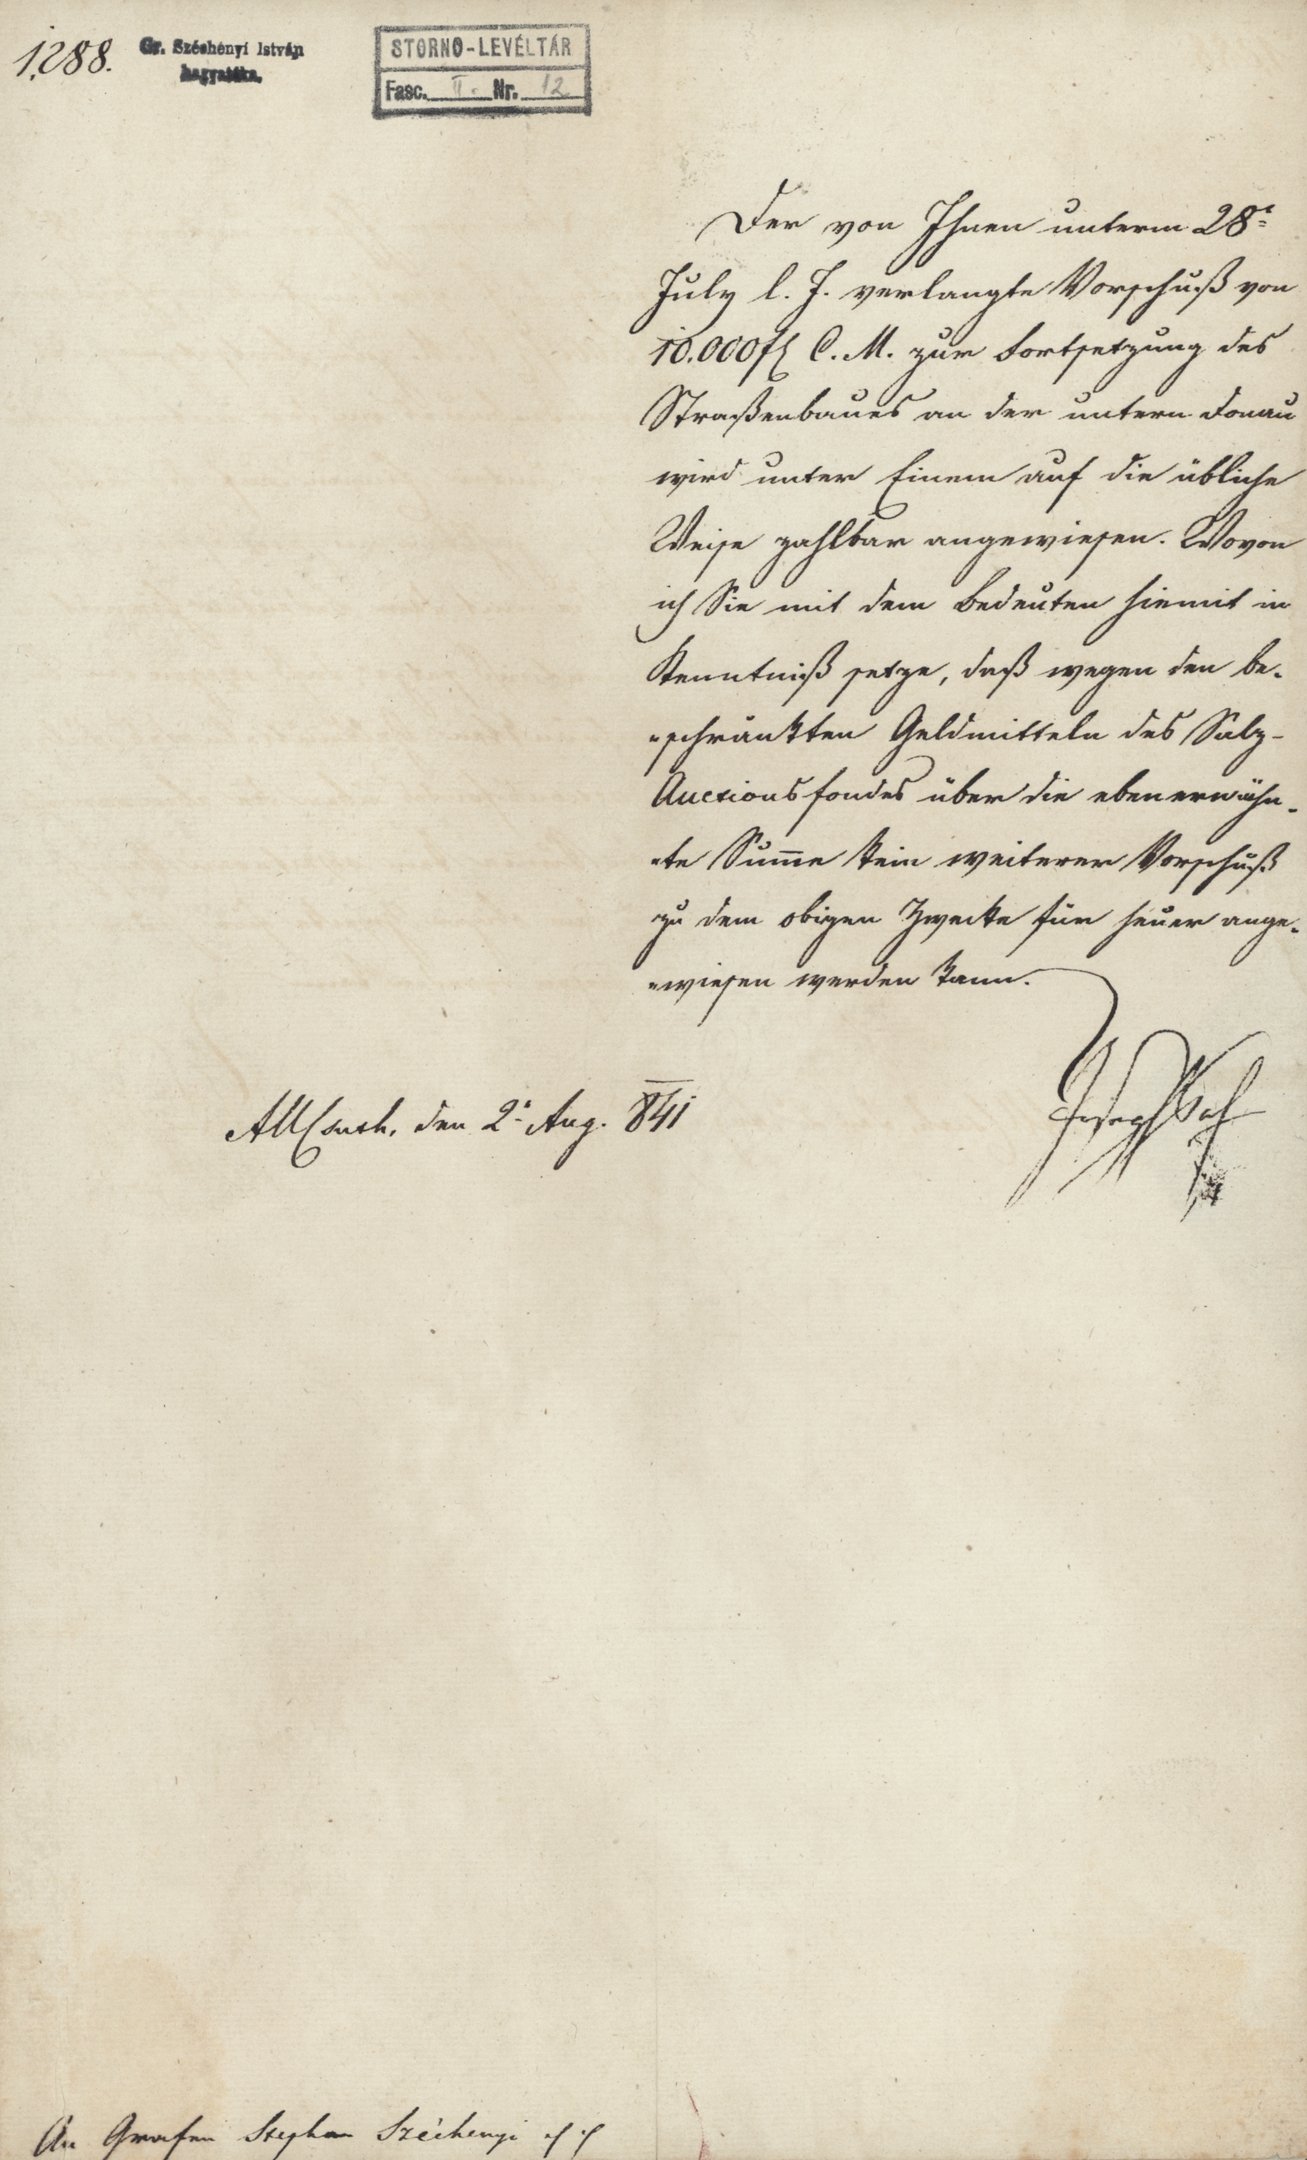 A Nádori Kancellária hivatalos levele Széchenyi Istvánnak (Magyar Környezetvédelmi és Vízügyi Múzeum - Duna Múzeum CC BY-NC-SA)